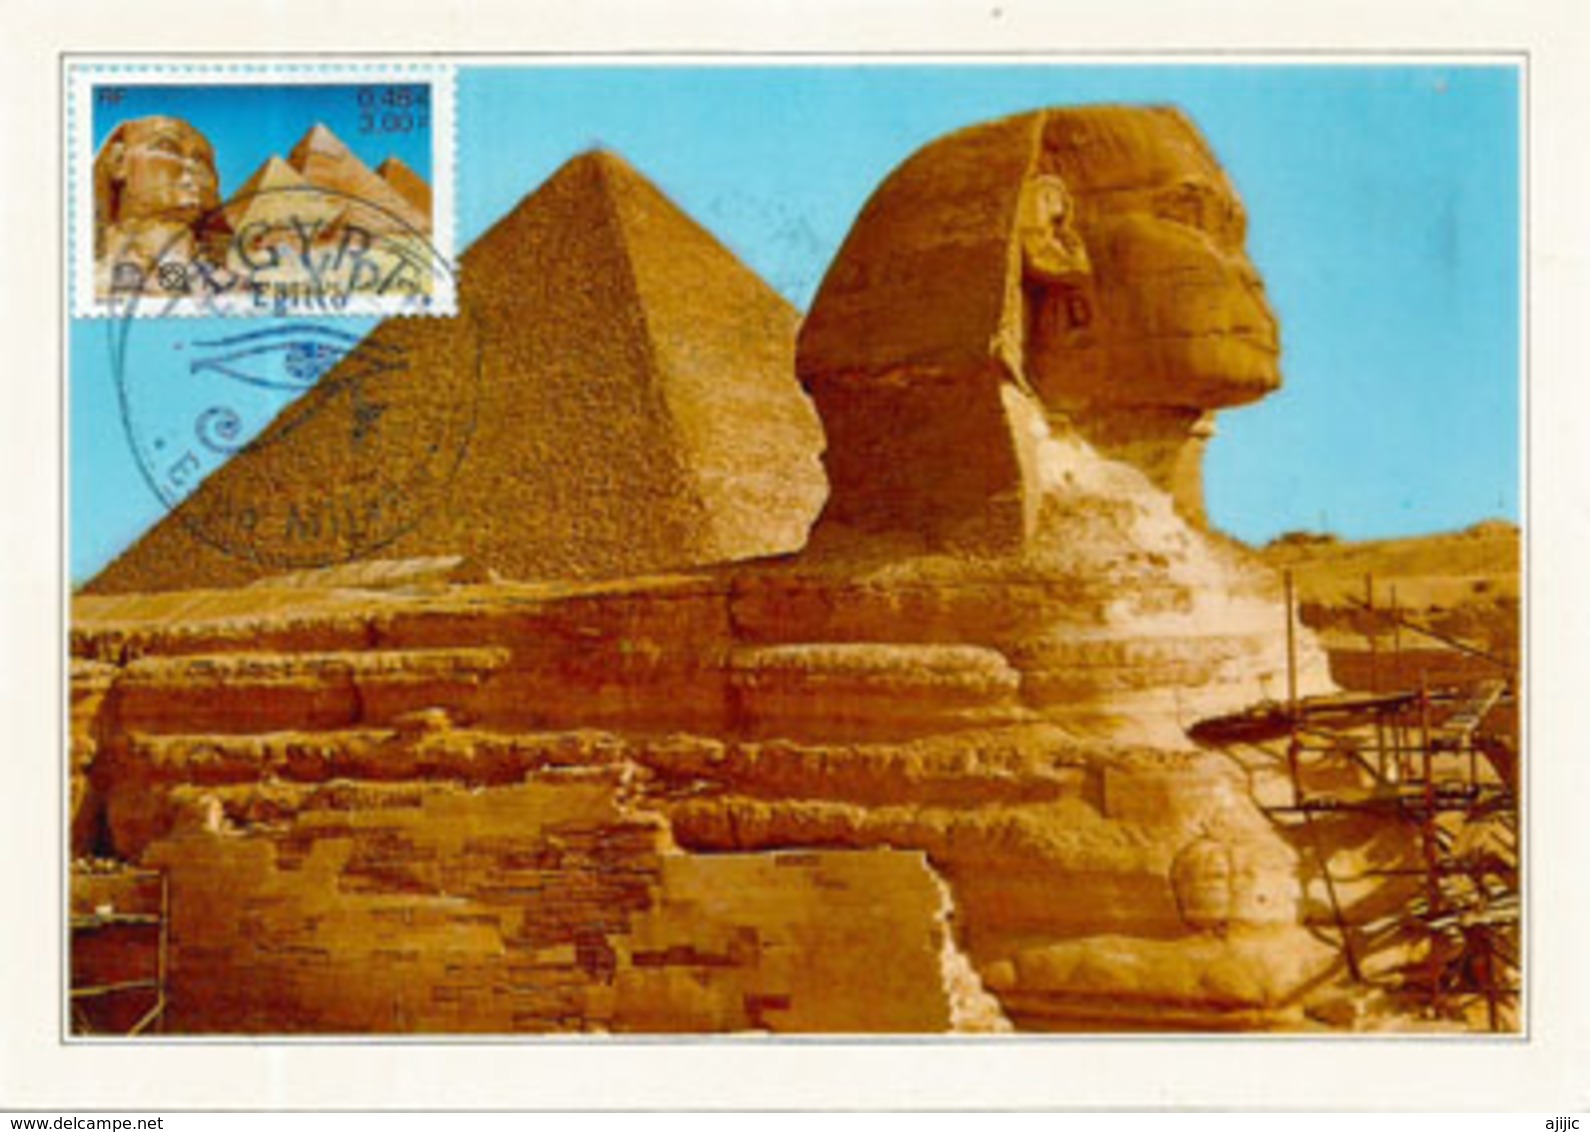 Sphinx De Gizeh & Pyramide De Khéops, Carte-maximum Souvenir Du Pavillon EGYPTE De L'EXPO UNIVERSELLE MILAN 2015 (RARE) - Archäologie